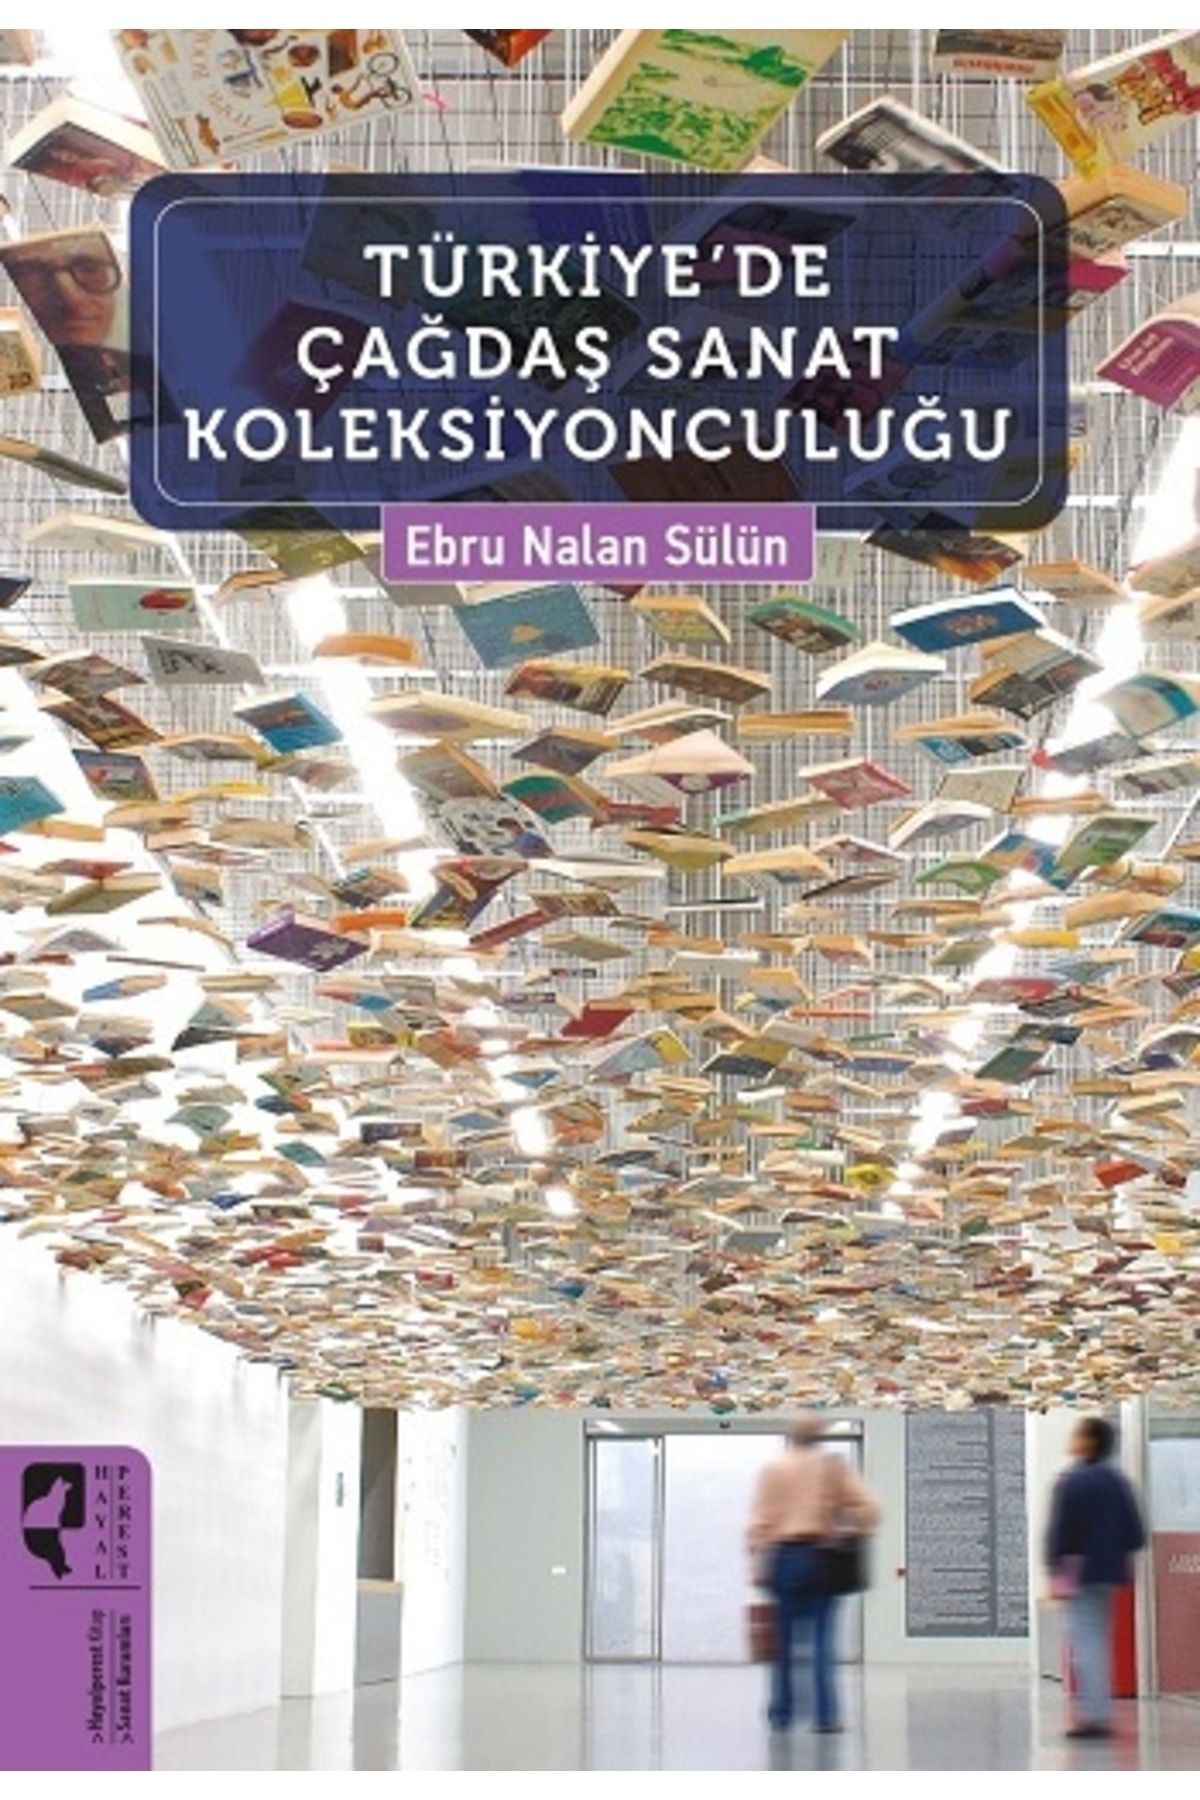 Hayalperest Yayınevi Türkiye'de Çağdaş Sanat Koleksiyonculuğu - Hayalperest Yayınları - Ebru Nalan Sülün Kitabı